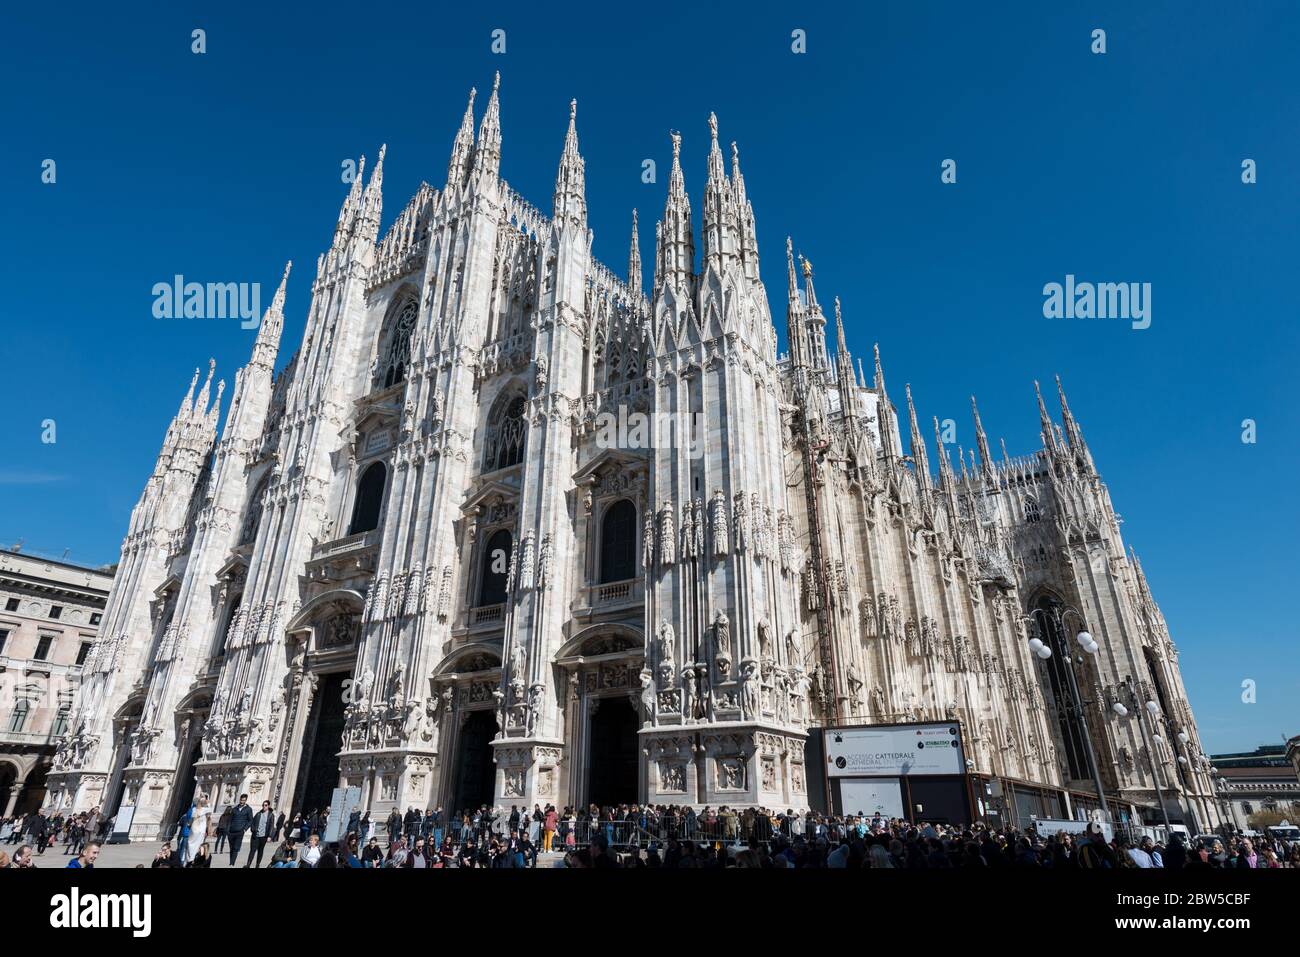 MILANO, ITALIA - 16 MARZO 2018: Immagine orizzontale della sorprendente architettura del Duomo di Milano, importante cattedrale cattolica di Milano. Foto Stock